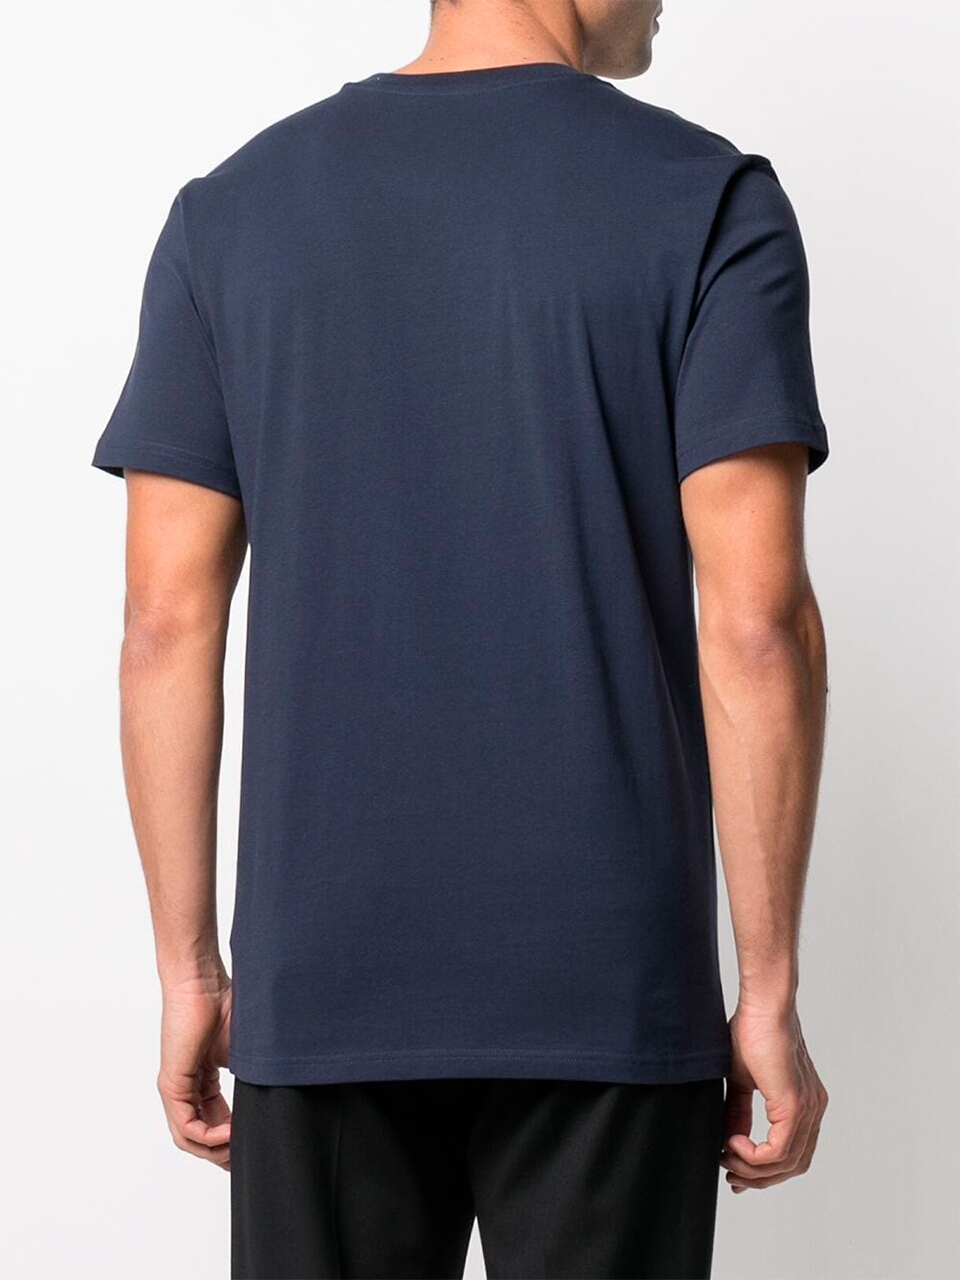 Imagem de: Camiseta Moschino Azul Escuro com Logo Interrogação Dupla Azul